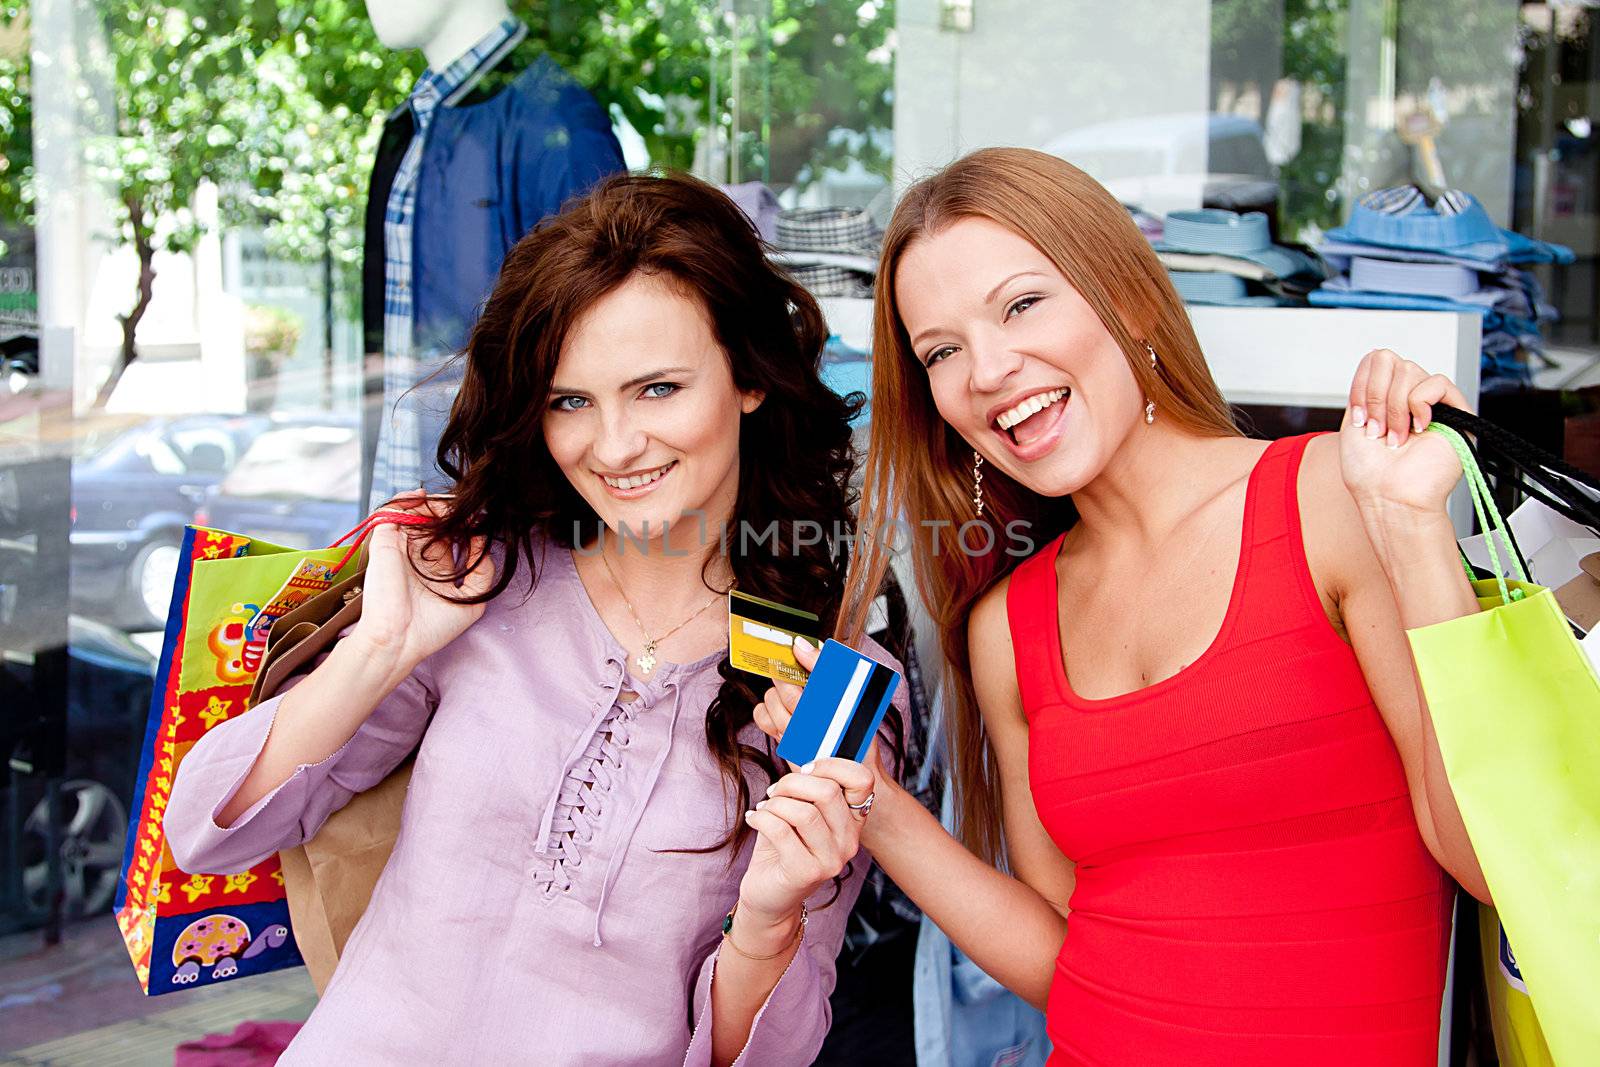 Two women go shopping by korvin79